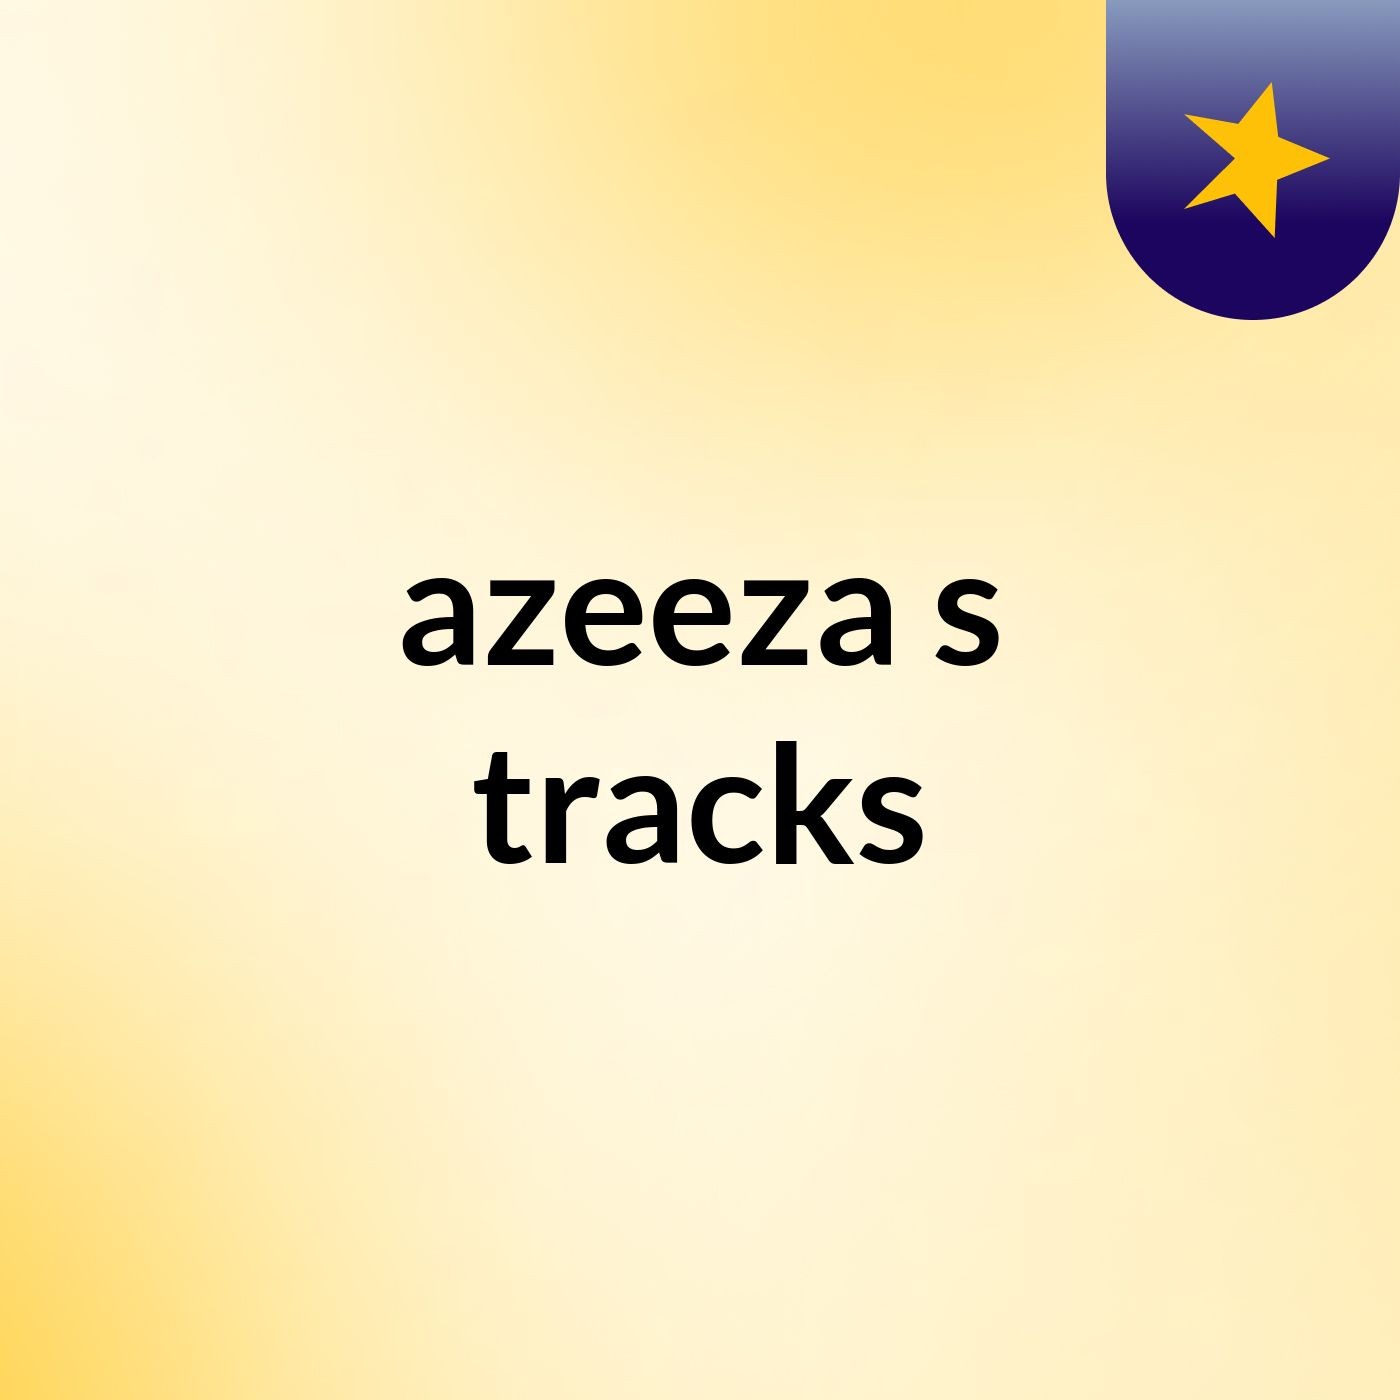 azeeza's tracks